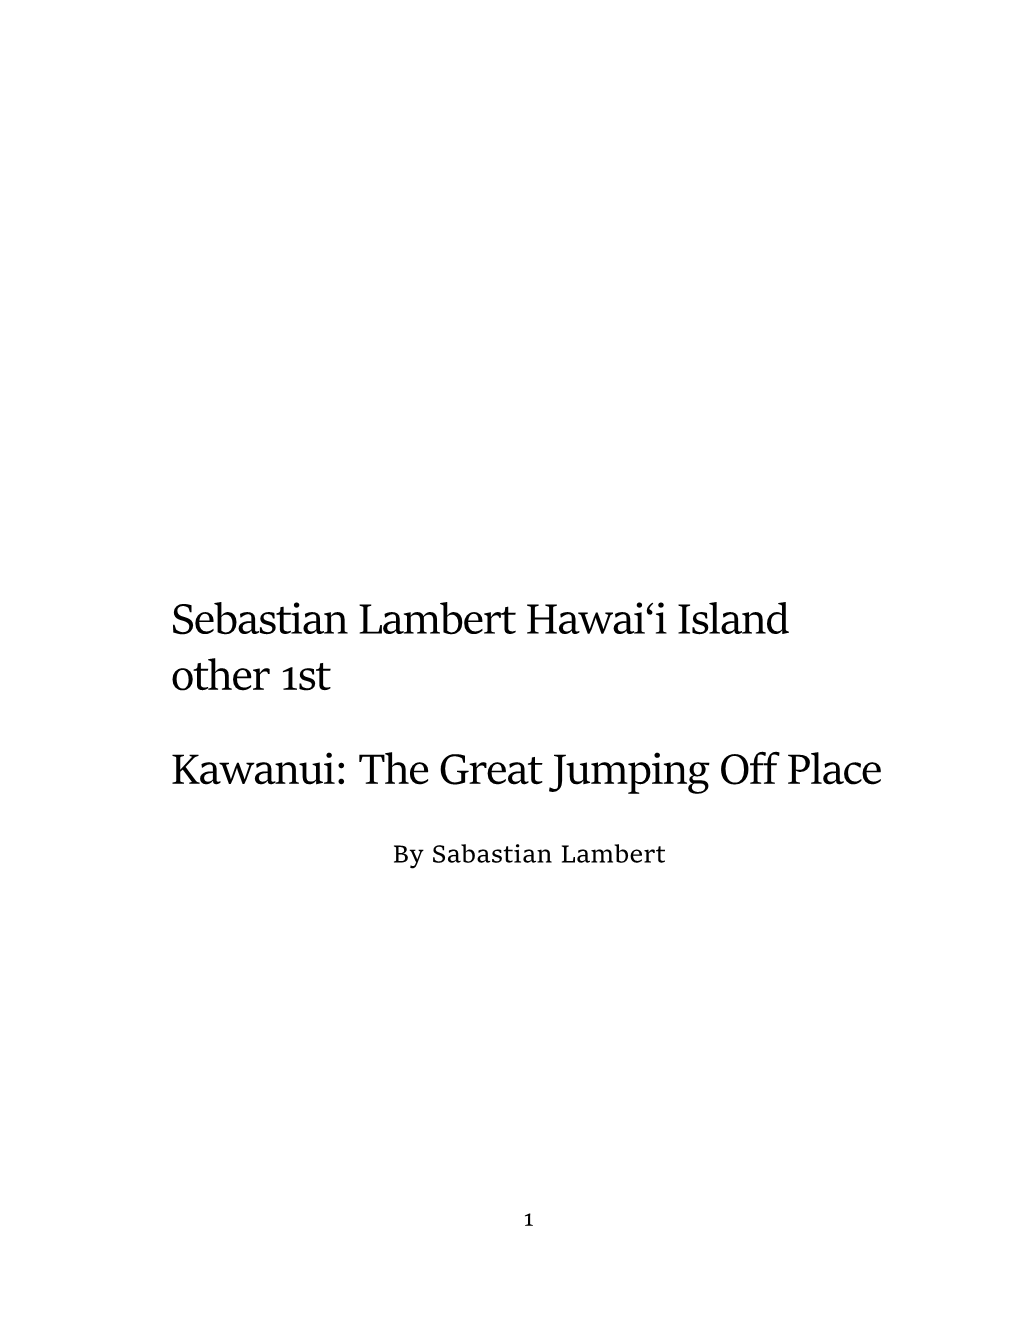 Sebastian Lambert Hawai'i Island Other 1St Kawanui: the Great Jumping Off Place